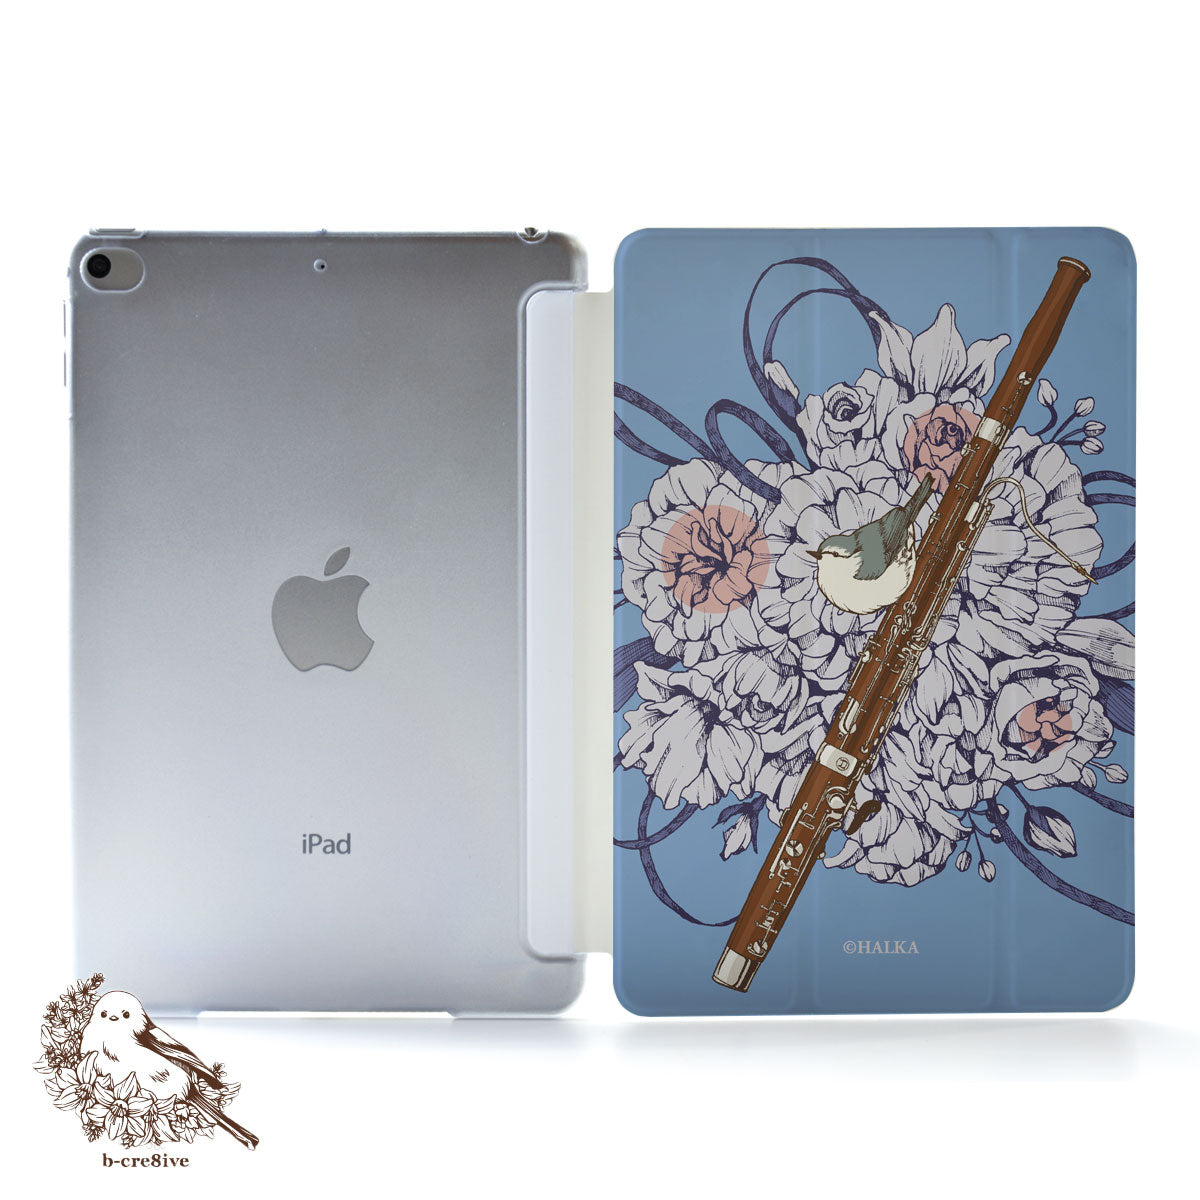 iPad ケース Air 5/4/3/2/1 10.9インチ iPadAir5 iPadケース おしゃれ かわいい 楽器 名入れiPad ケース Air 5/4/3/2/1 10.9インチ iPadAir5 iPadケース おしゃれ かわいい 楽器 名入れ